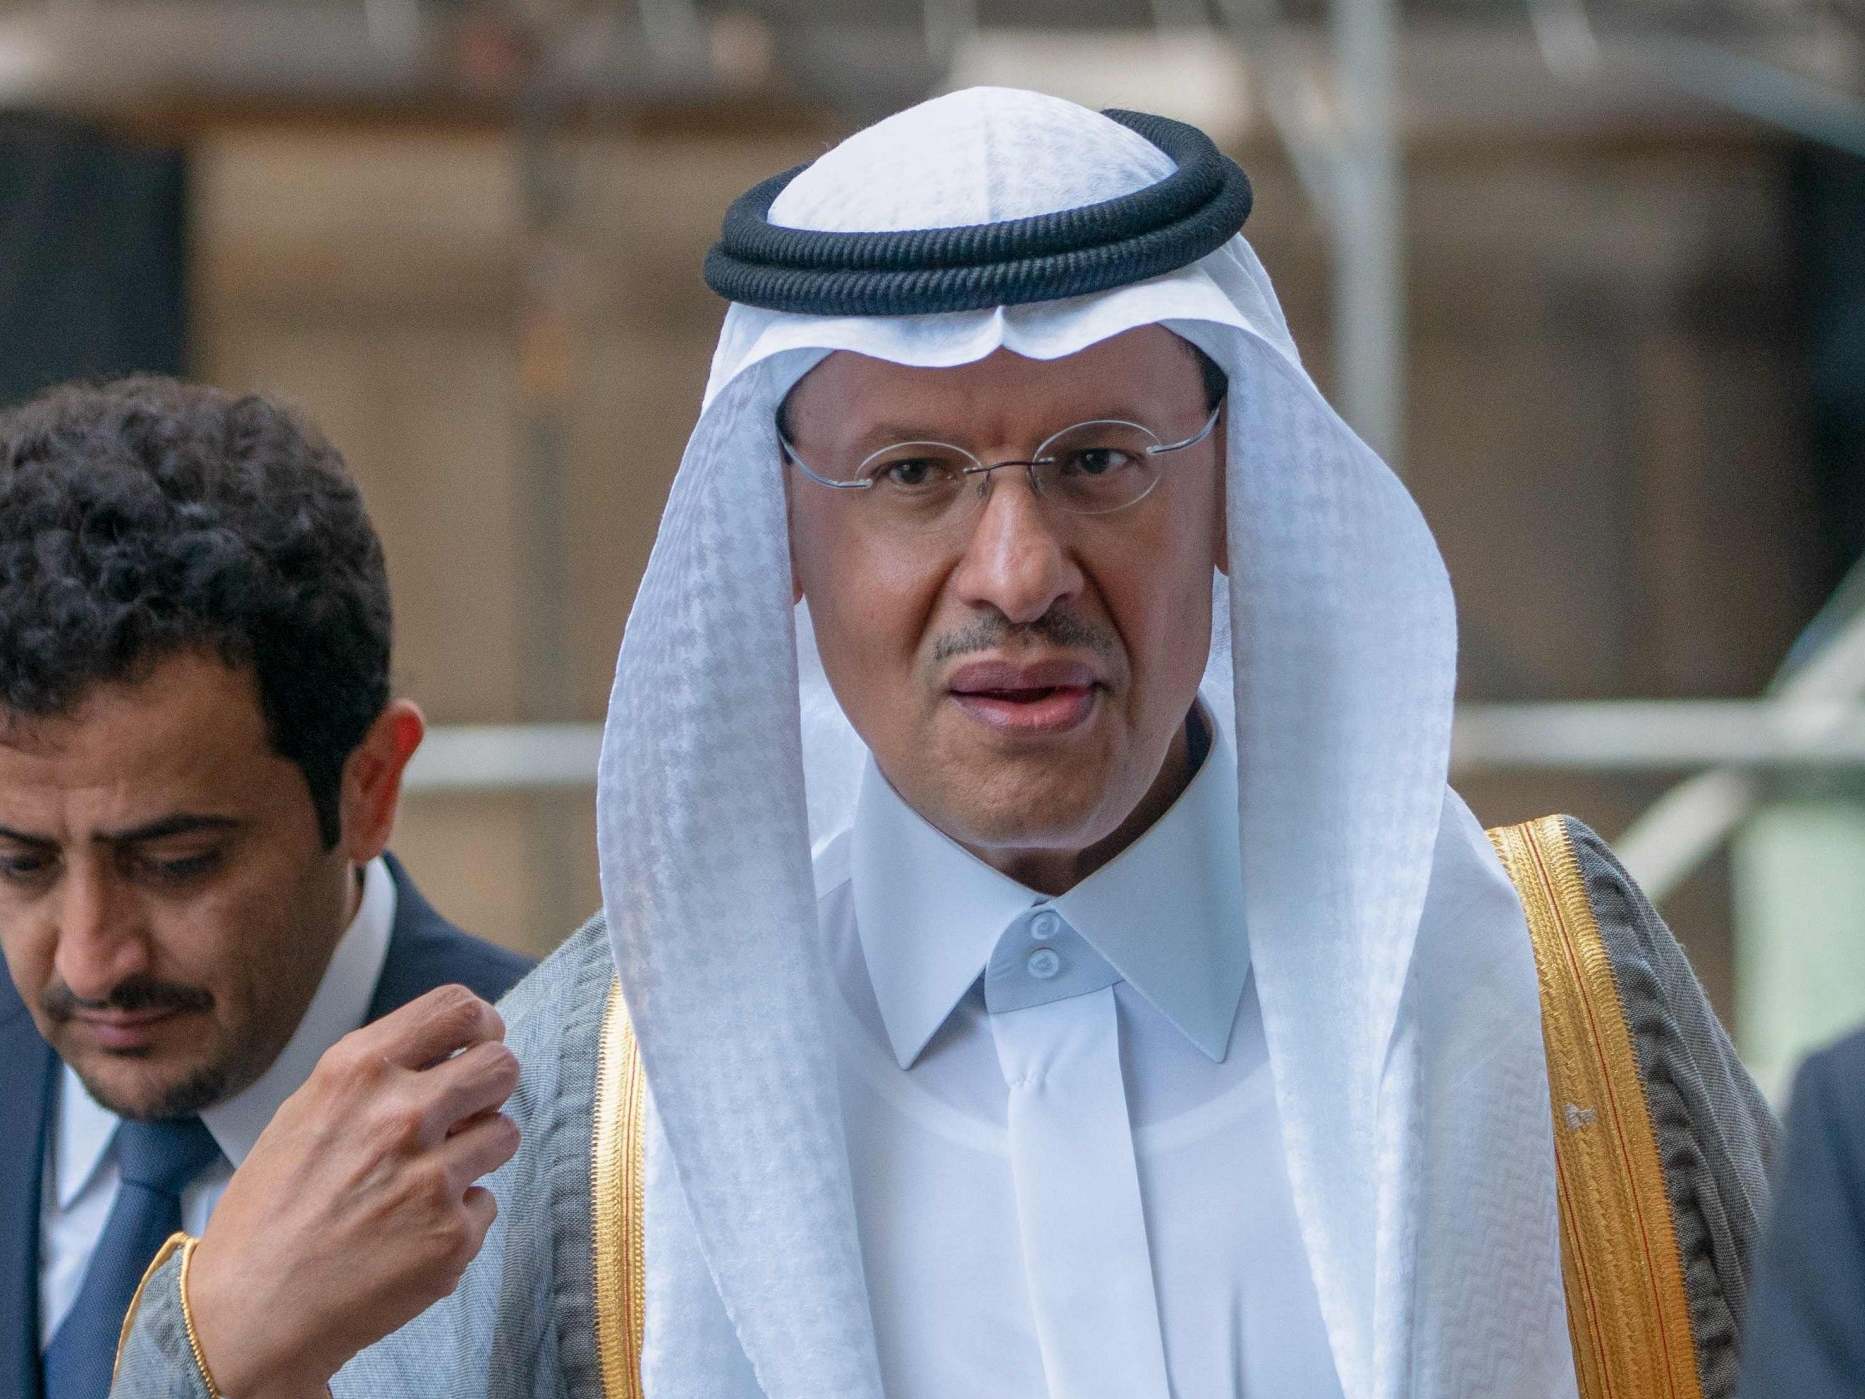 Abdulaziz Bin Salman previously served as deputy oil minister